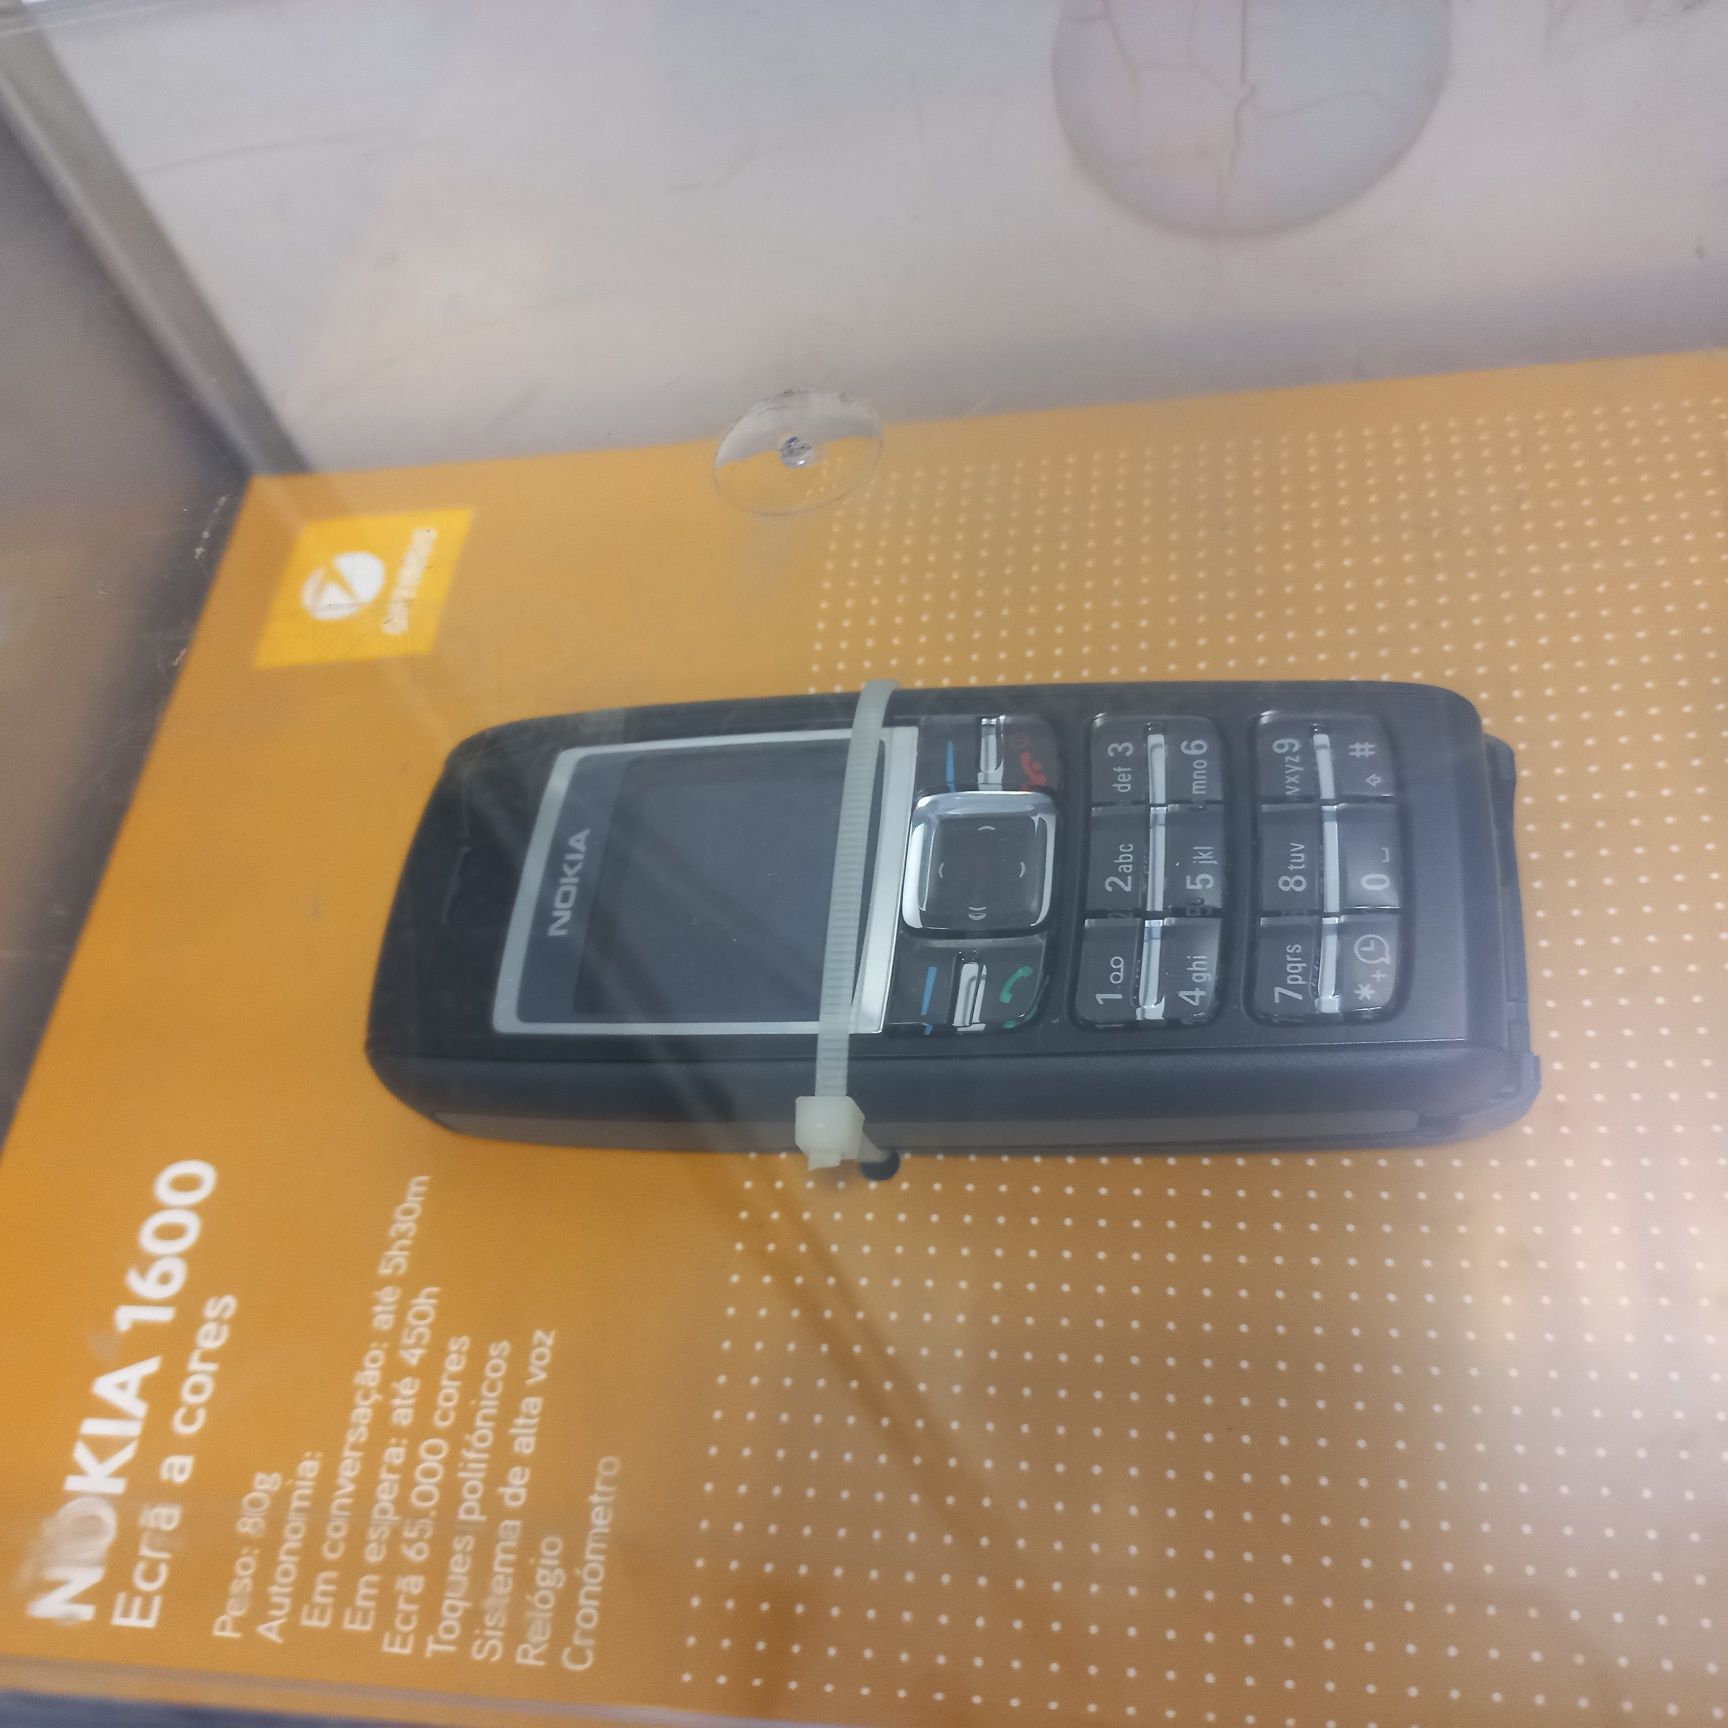 Nokia 1600 a cores